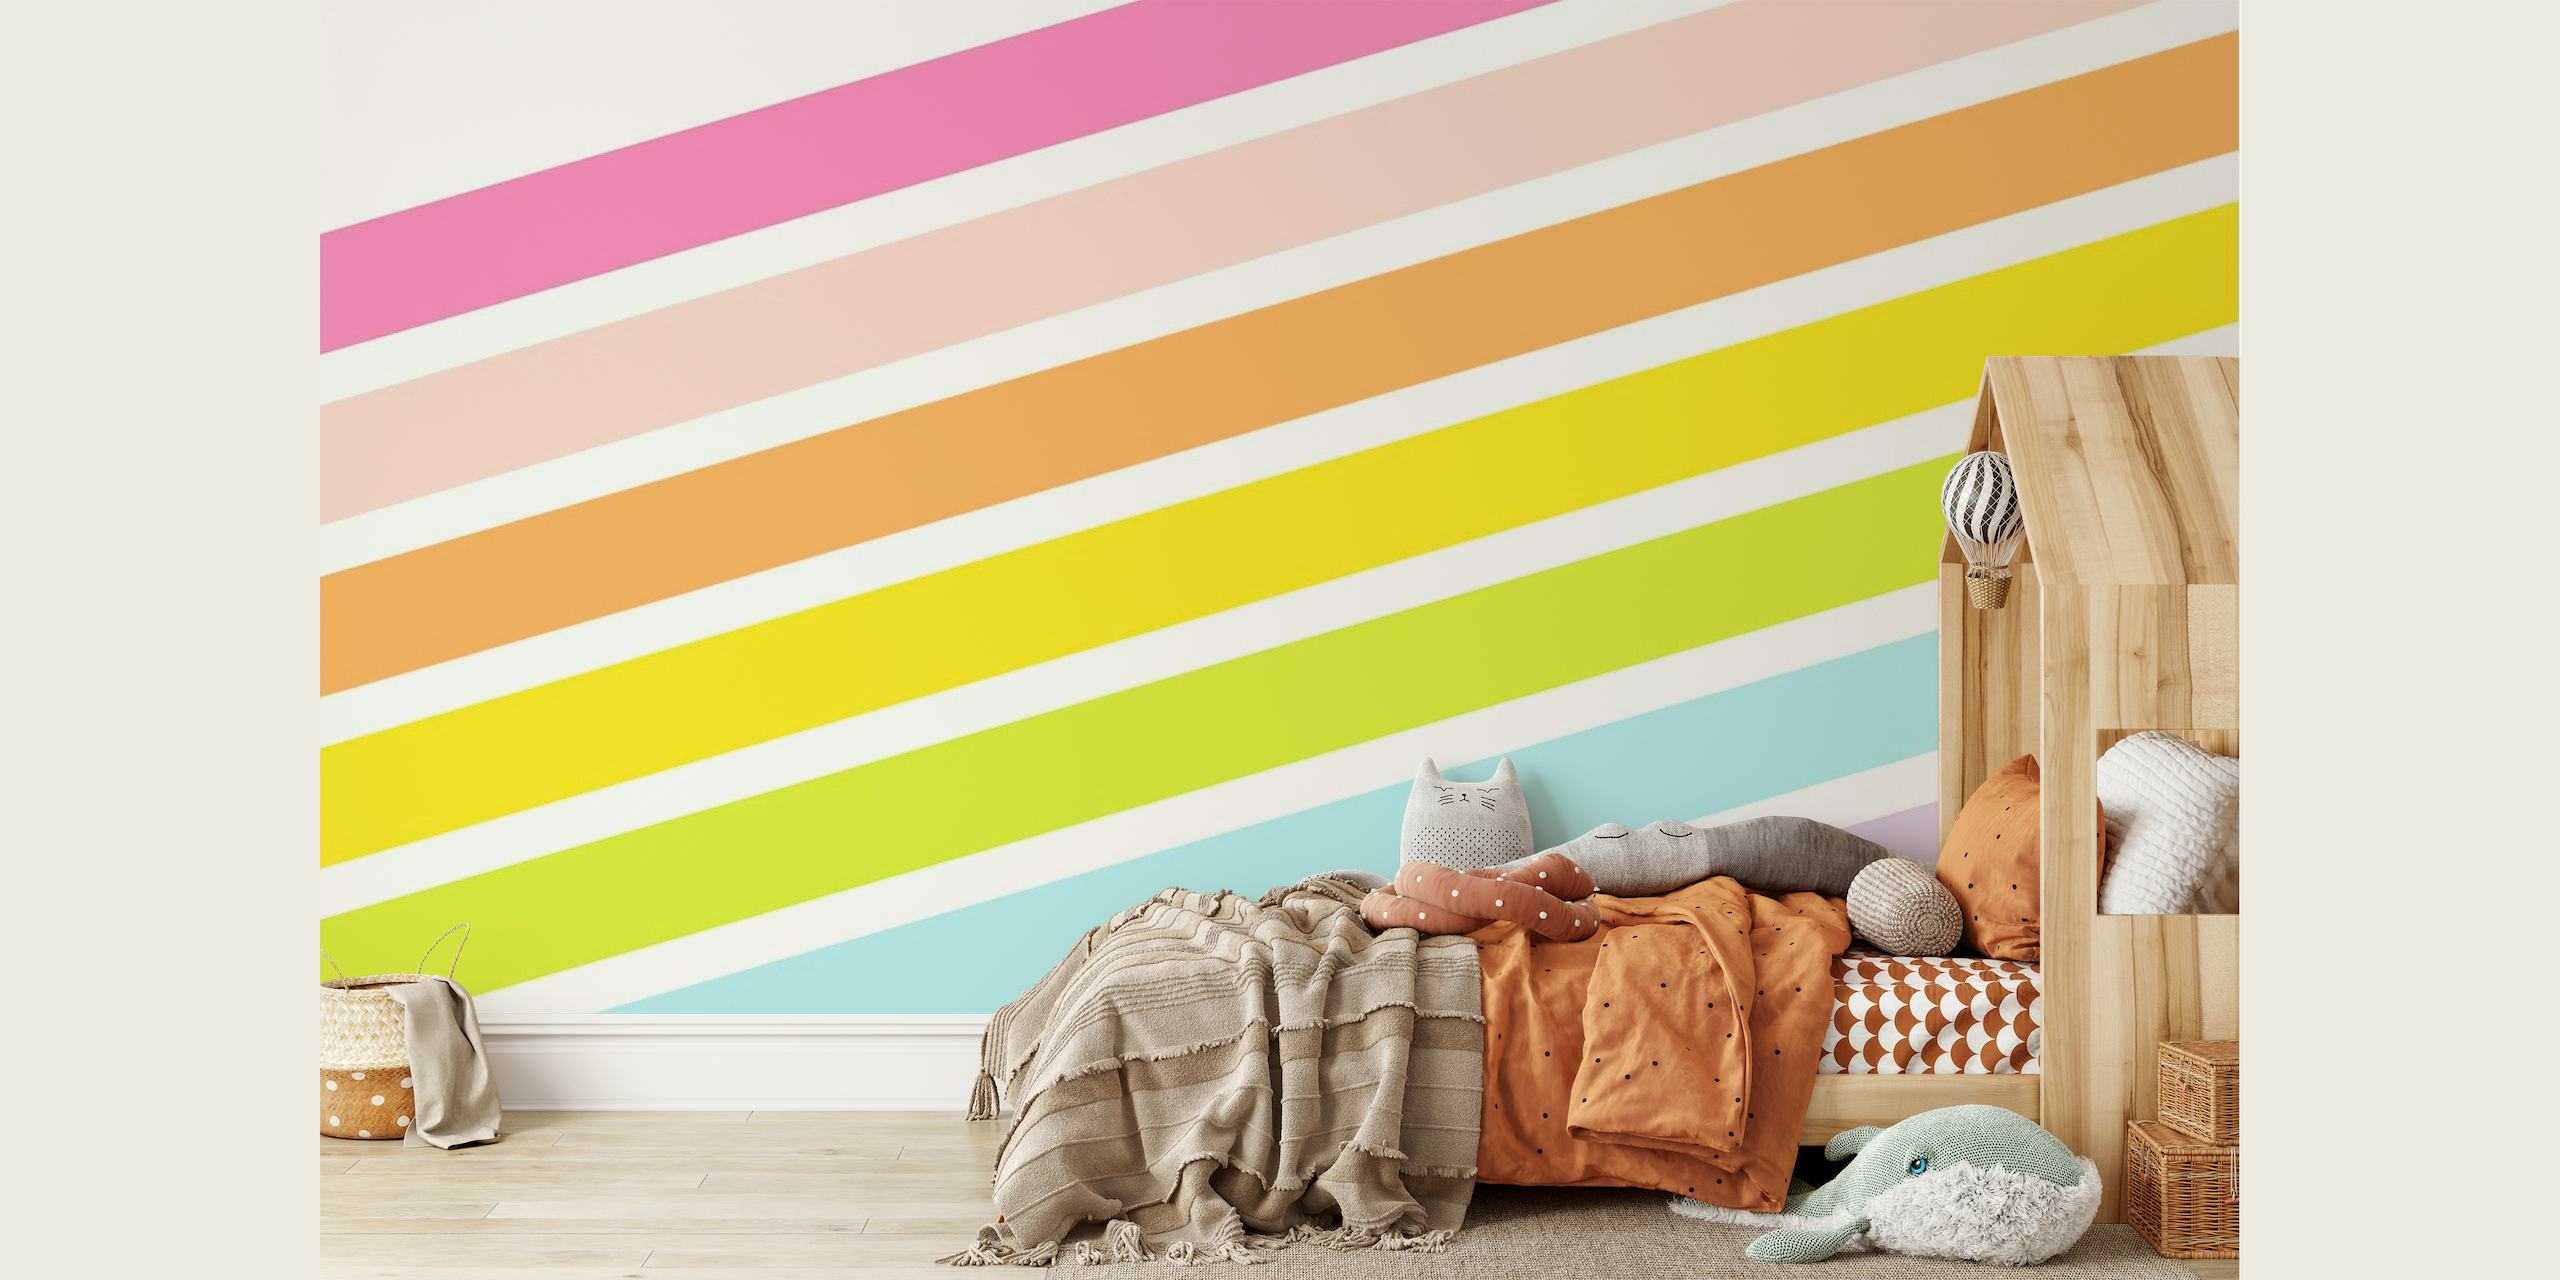 Vægmaleri af livlige, farverige regnbuestriber i et diagonalt mønster